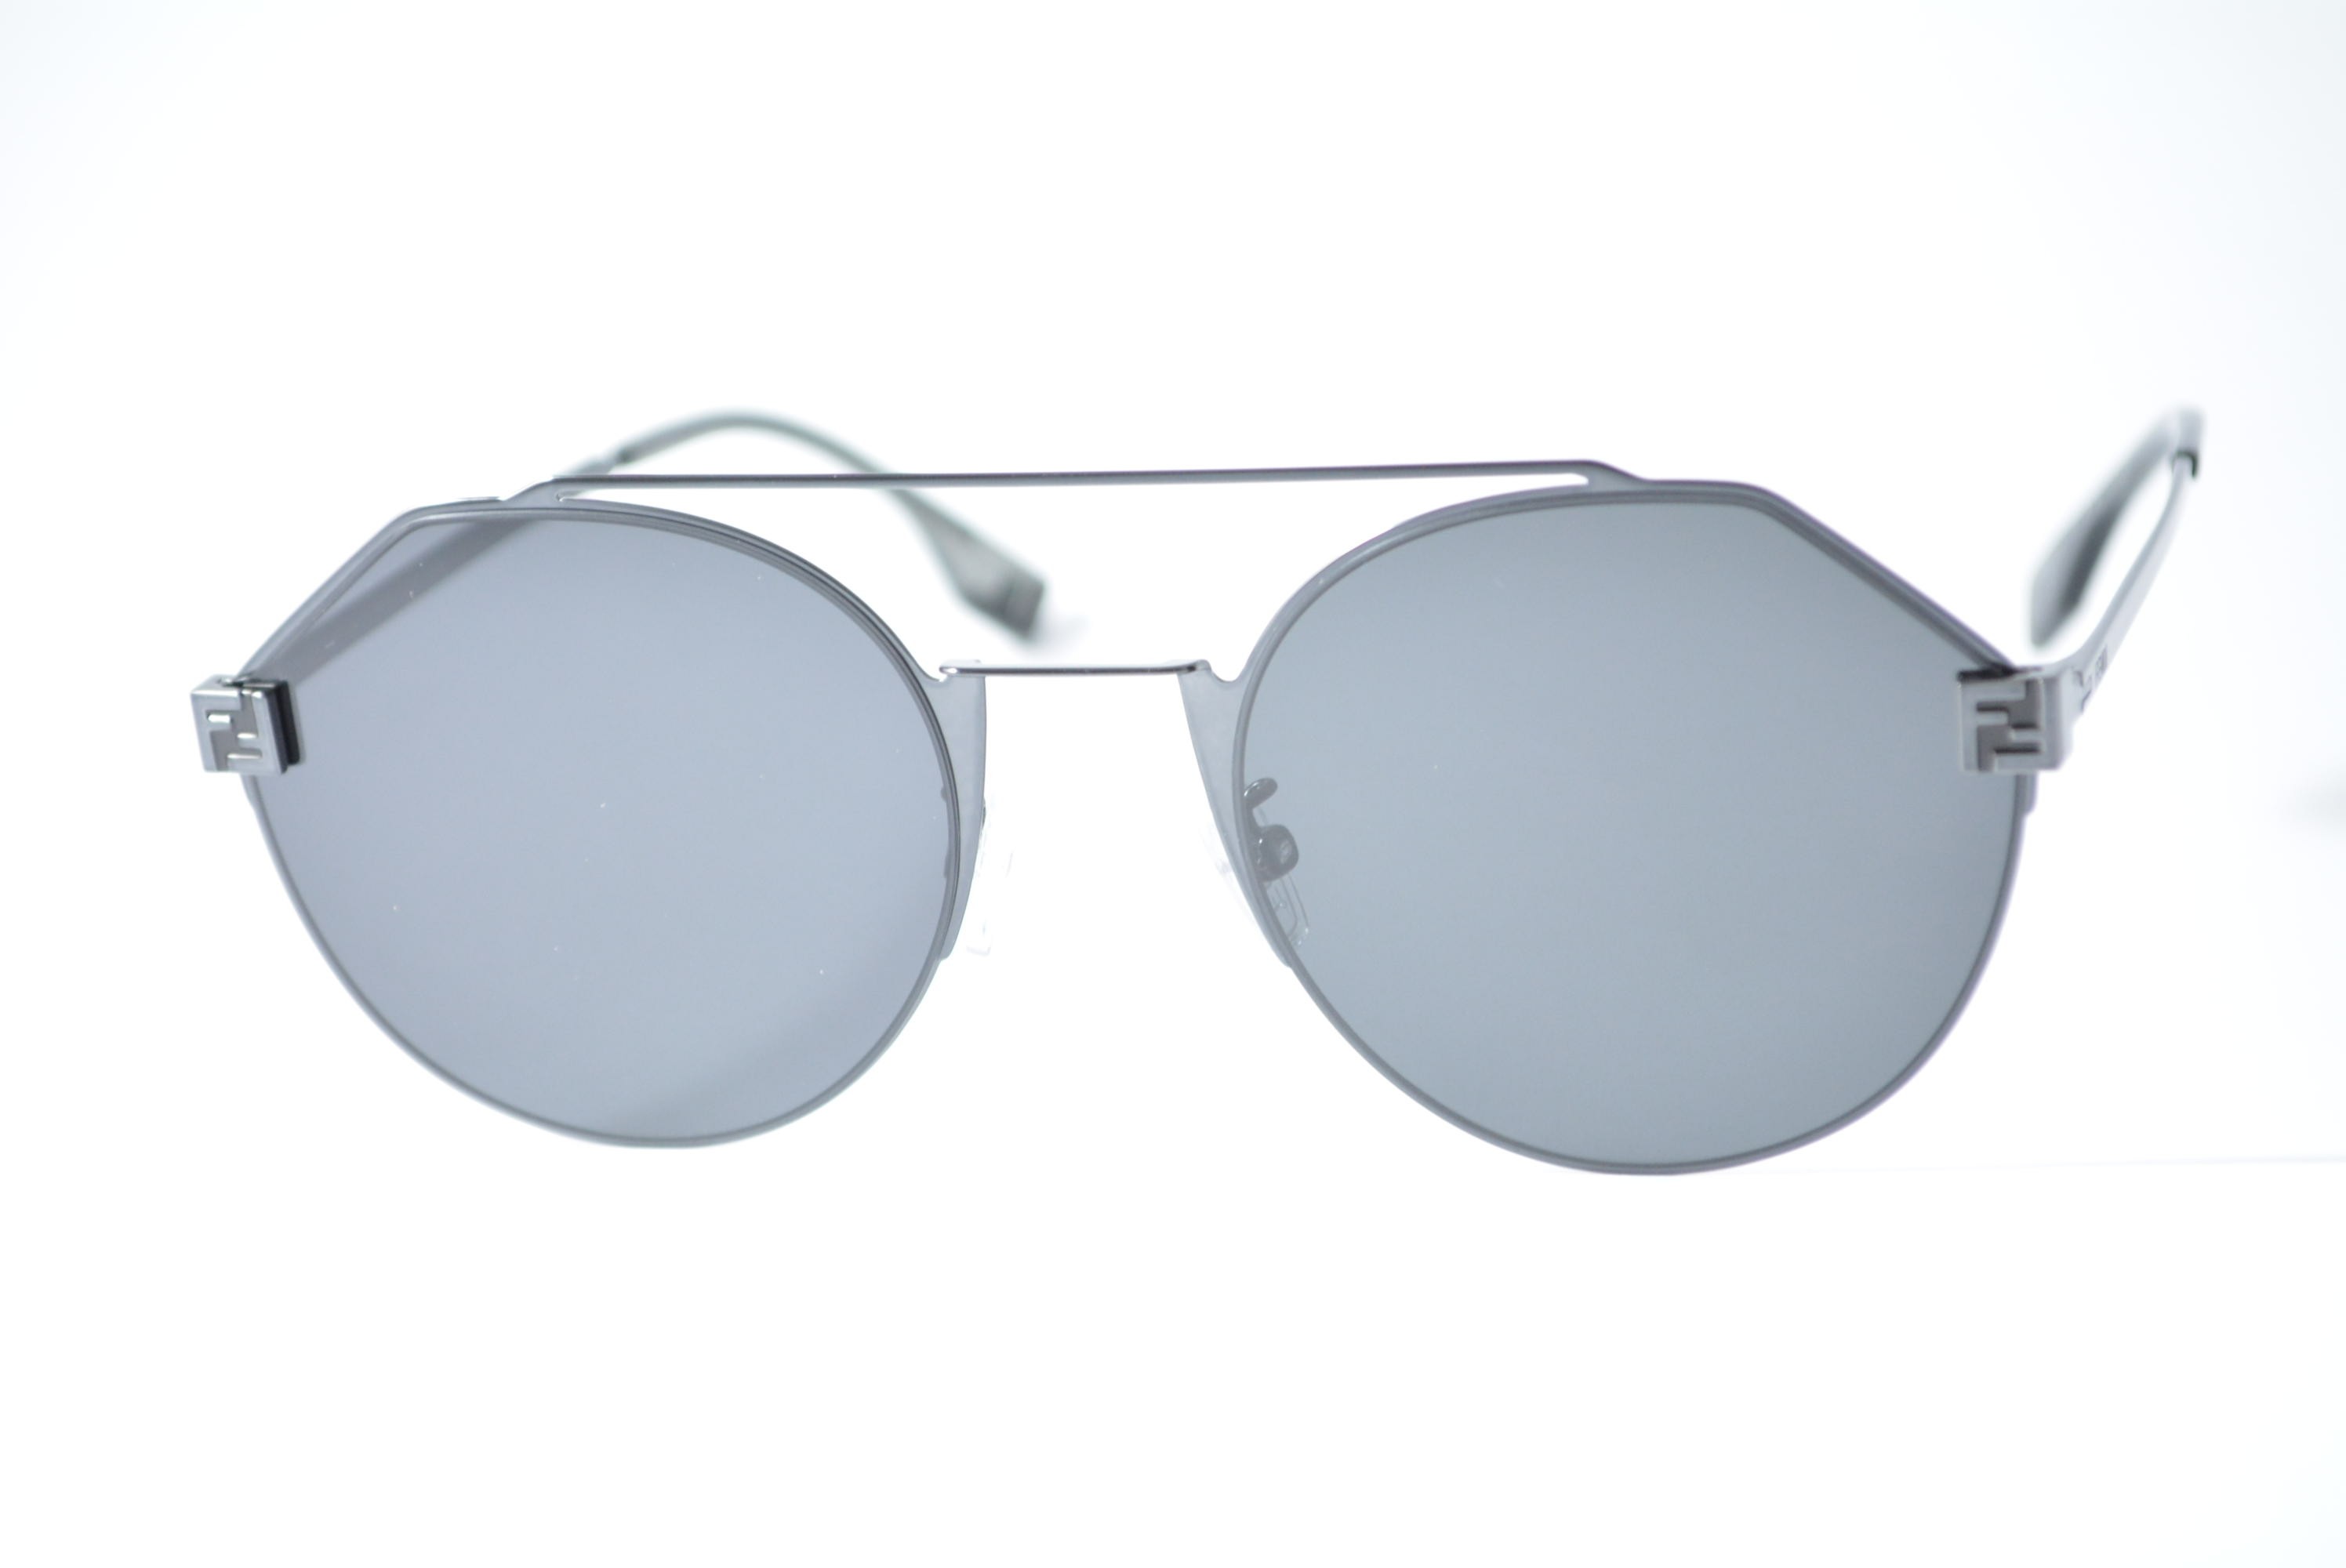 óculos de sol Fendi mod FE40060u 14a